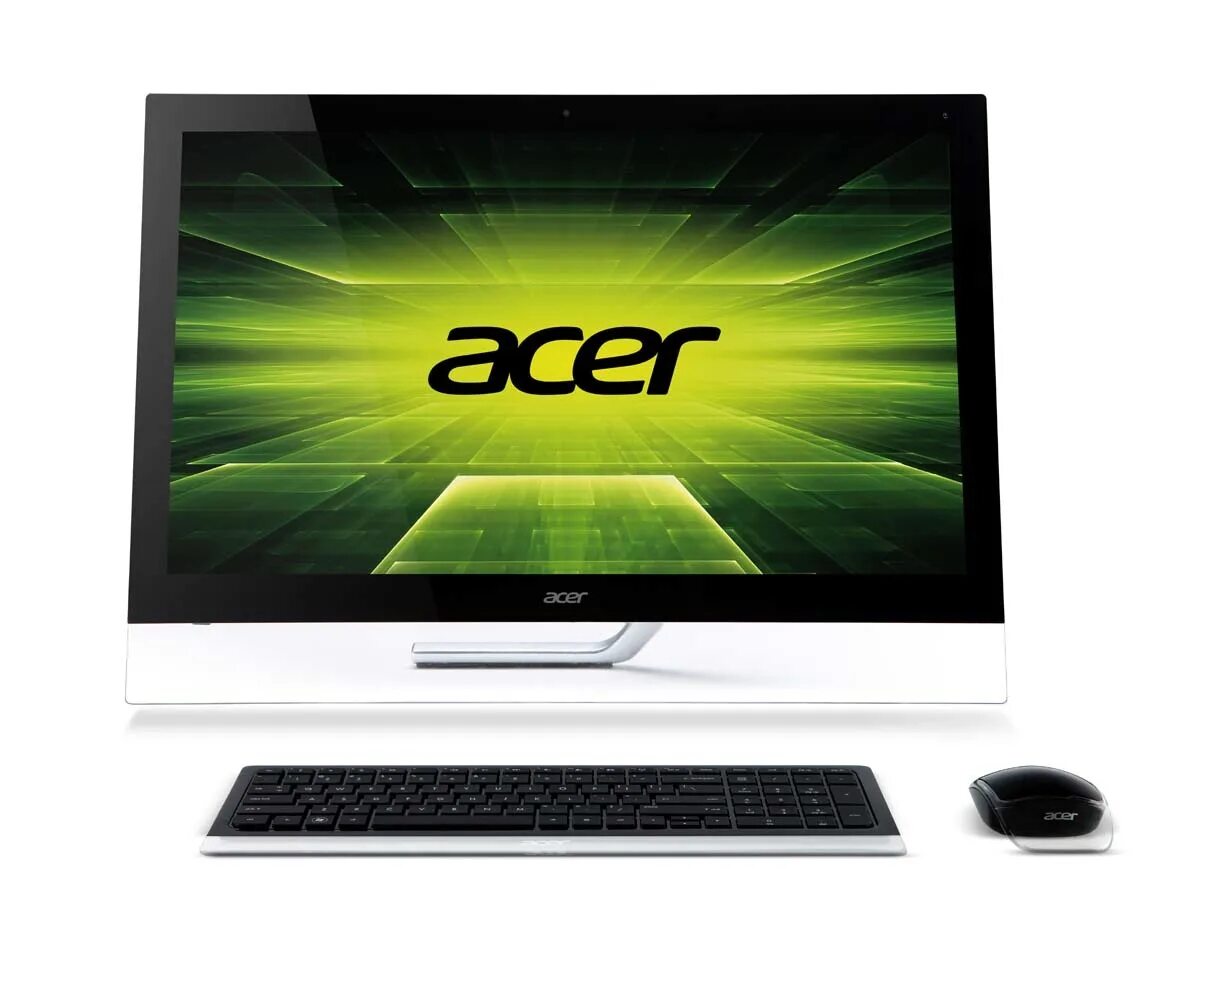 Acer Aspire 7600u. Acer 7600u (dqsl6er008). Моноблок 23 Acer Aspire 5600u. Моноблок 27" Acer Aspire z7600u. Aspire москва